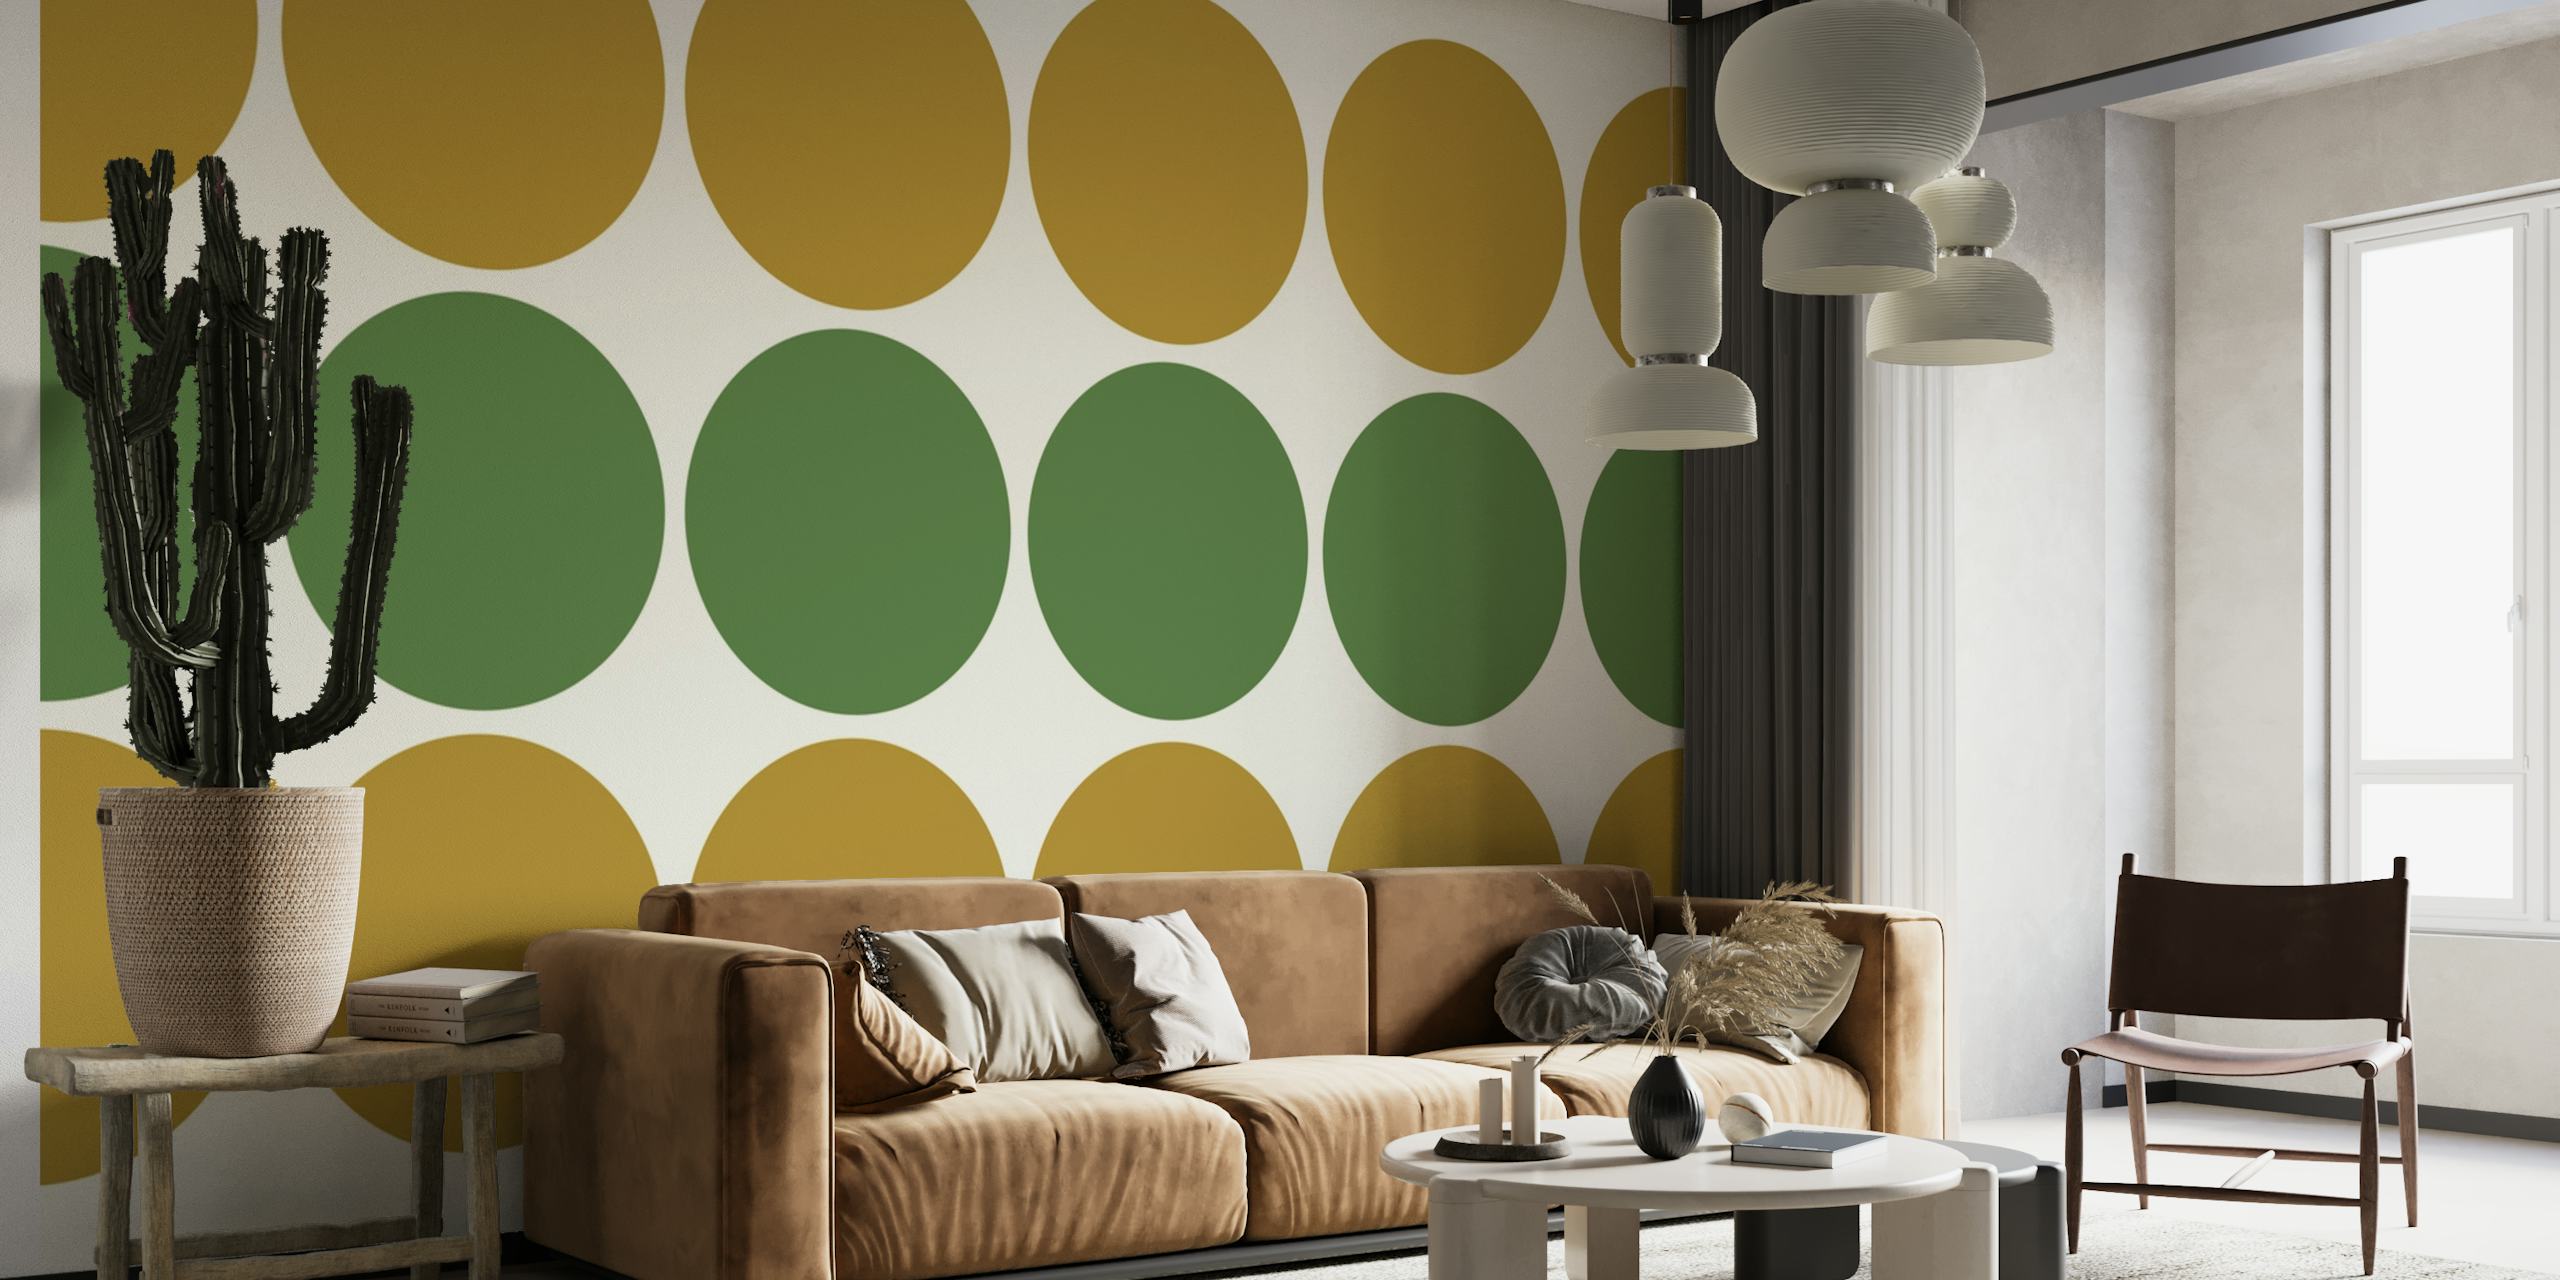 Papier peint géométrique abstrait avec des cercles verts discrets et dorés chauds dans un motif symétrique